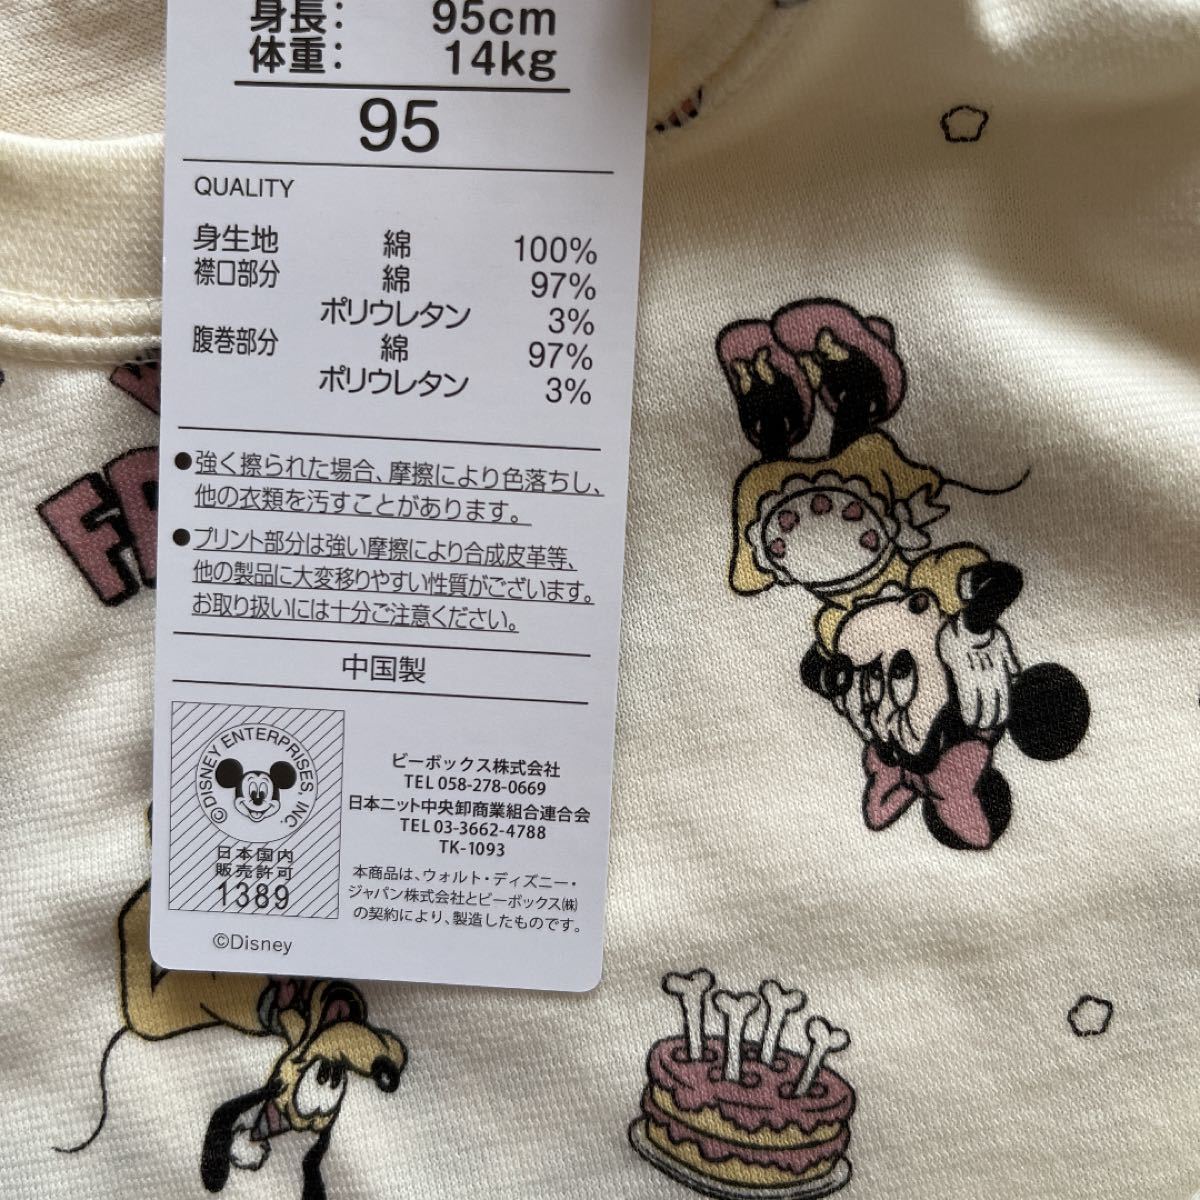 【Disney】ディズニー ミッキー☆ミニー 総柄 腹巻き付き パジャマ 半袖 ハーフパンツ95